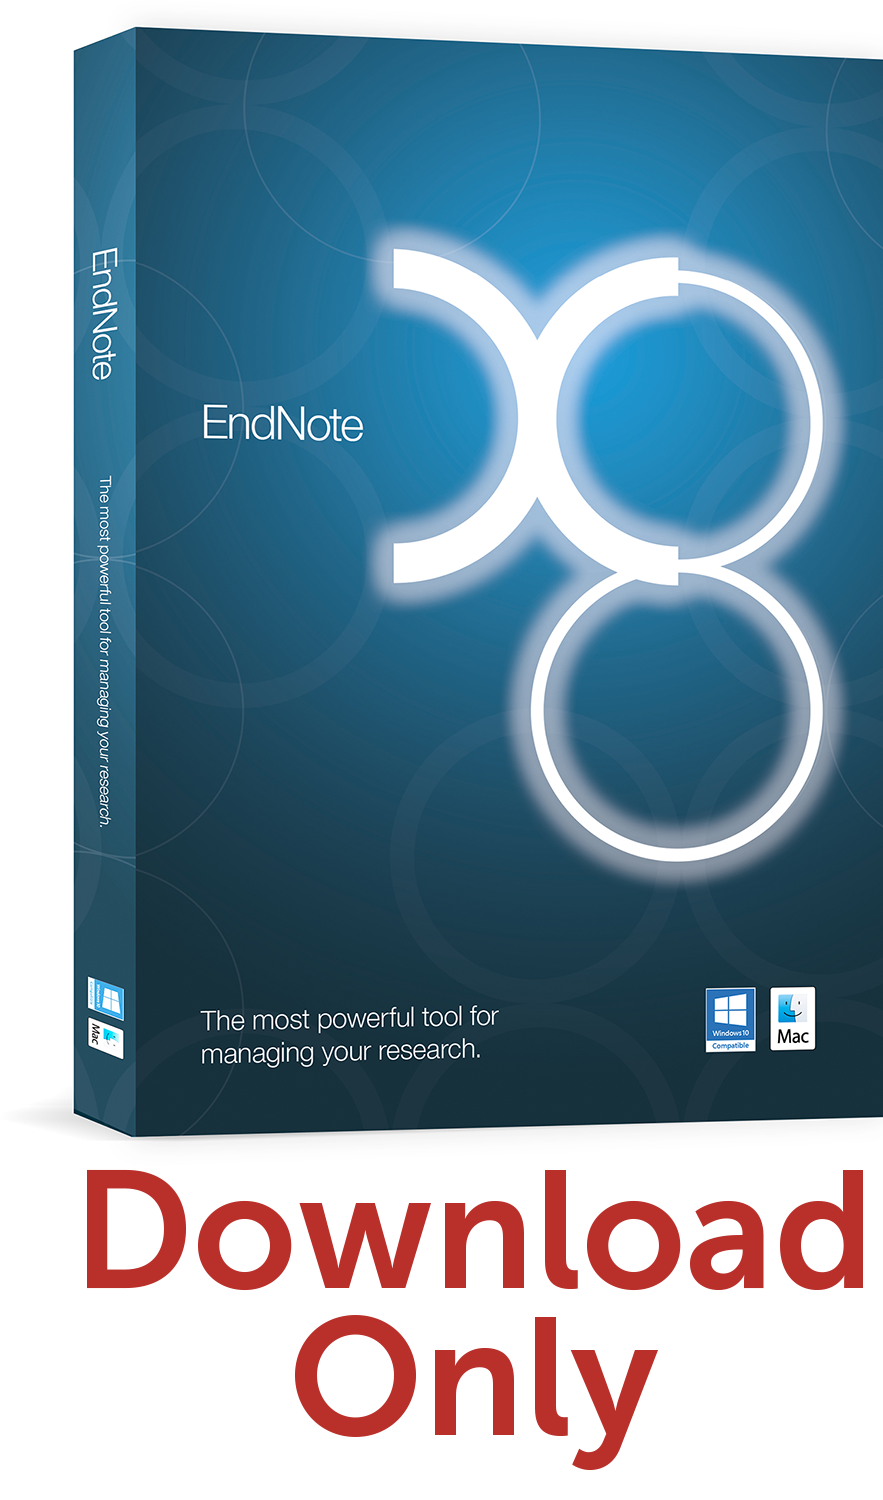 endnote free download torrent